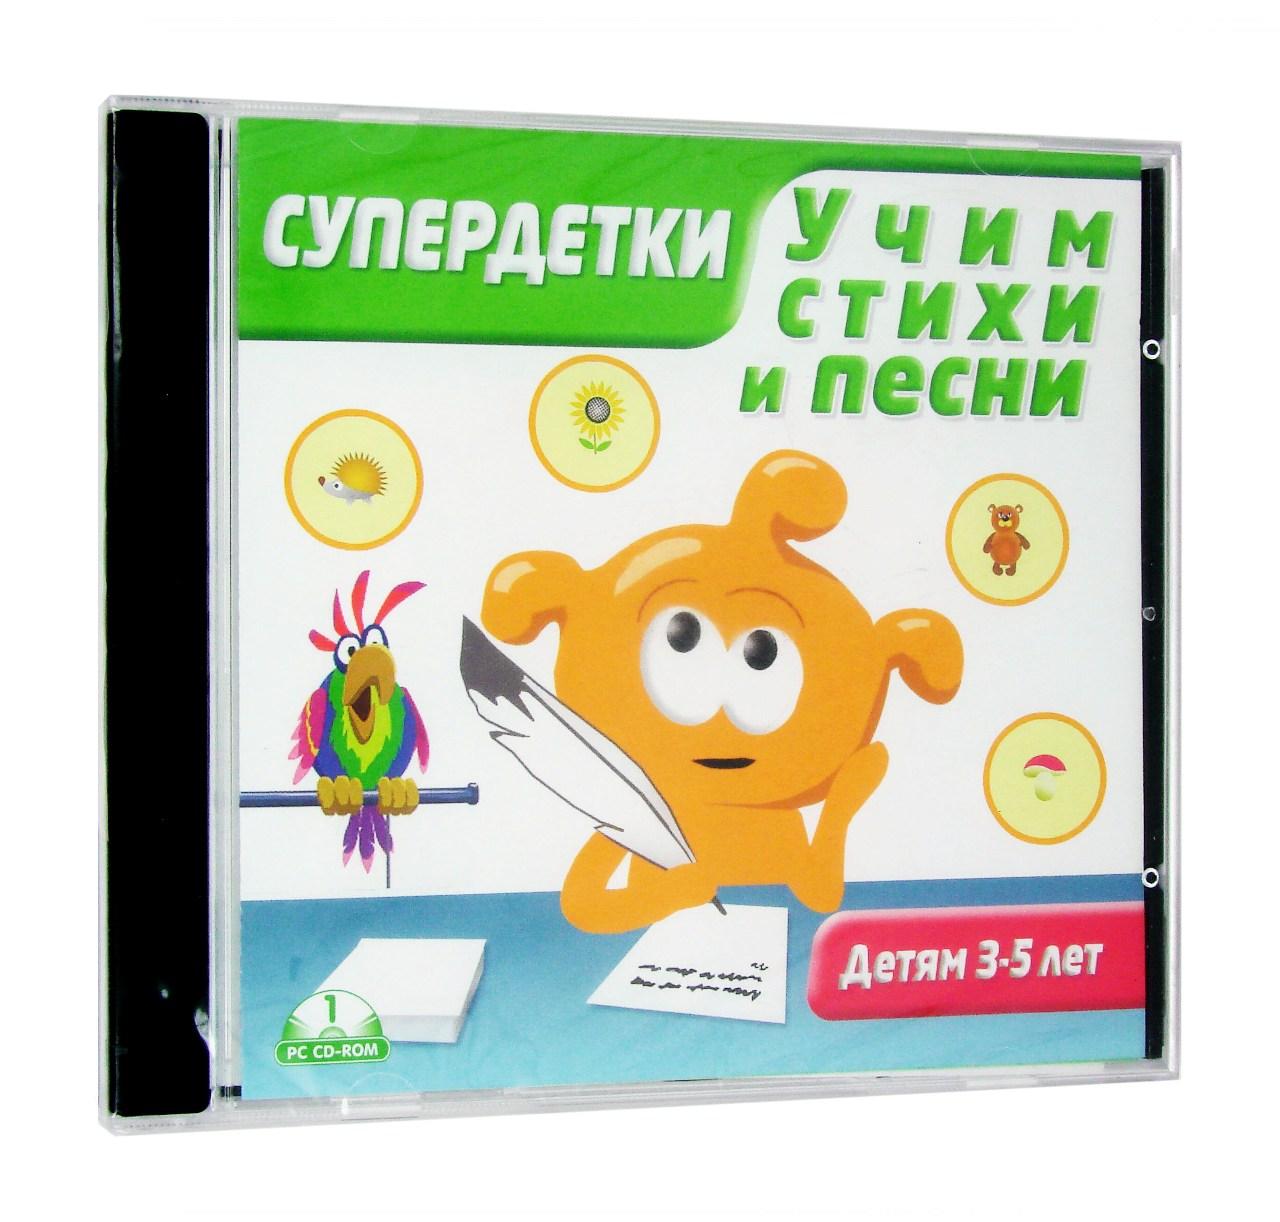 Компьютерный компакт-диск Супердетки. Учим стихи и песни 3-5 лет. (ПК), фирма "Новый диск", 1CD